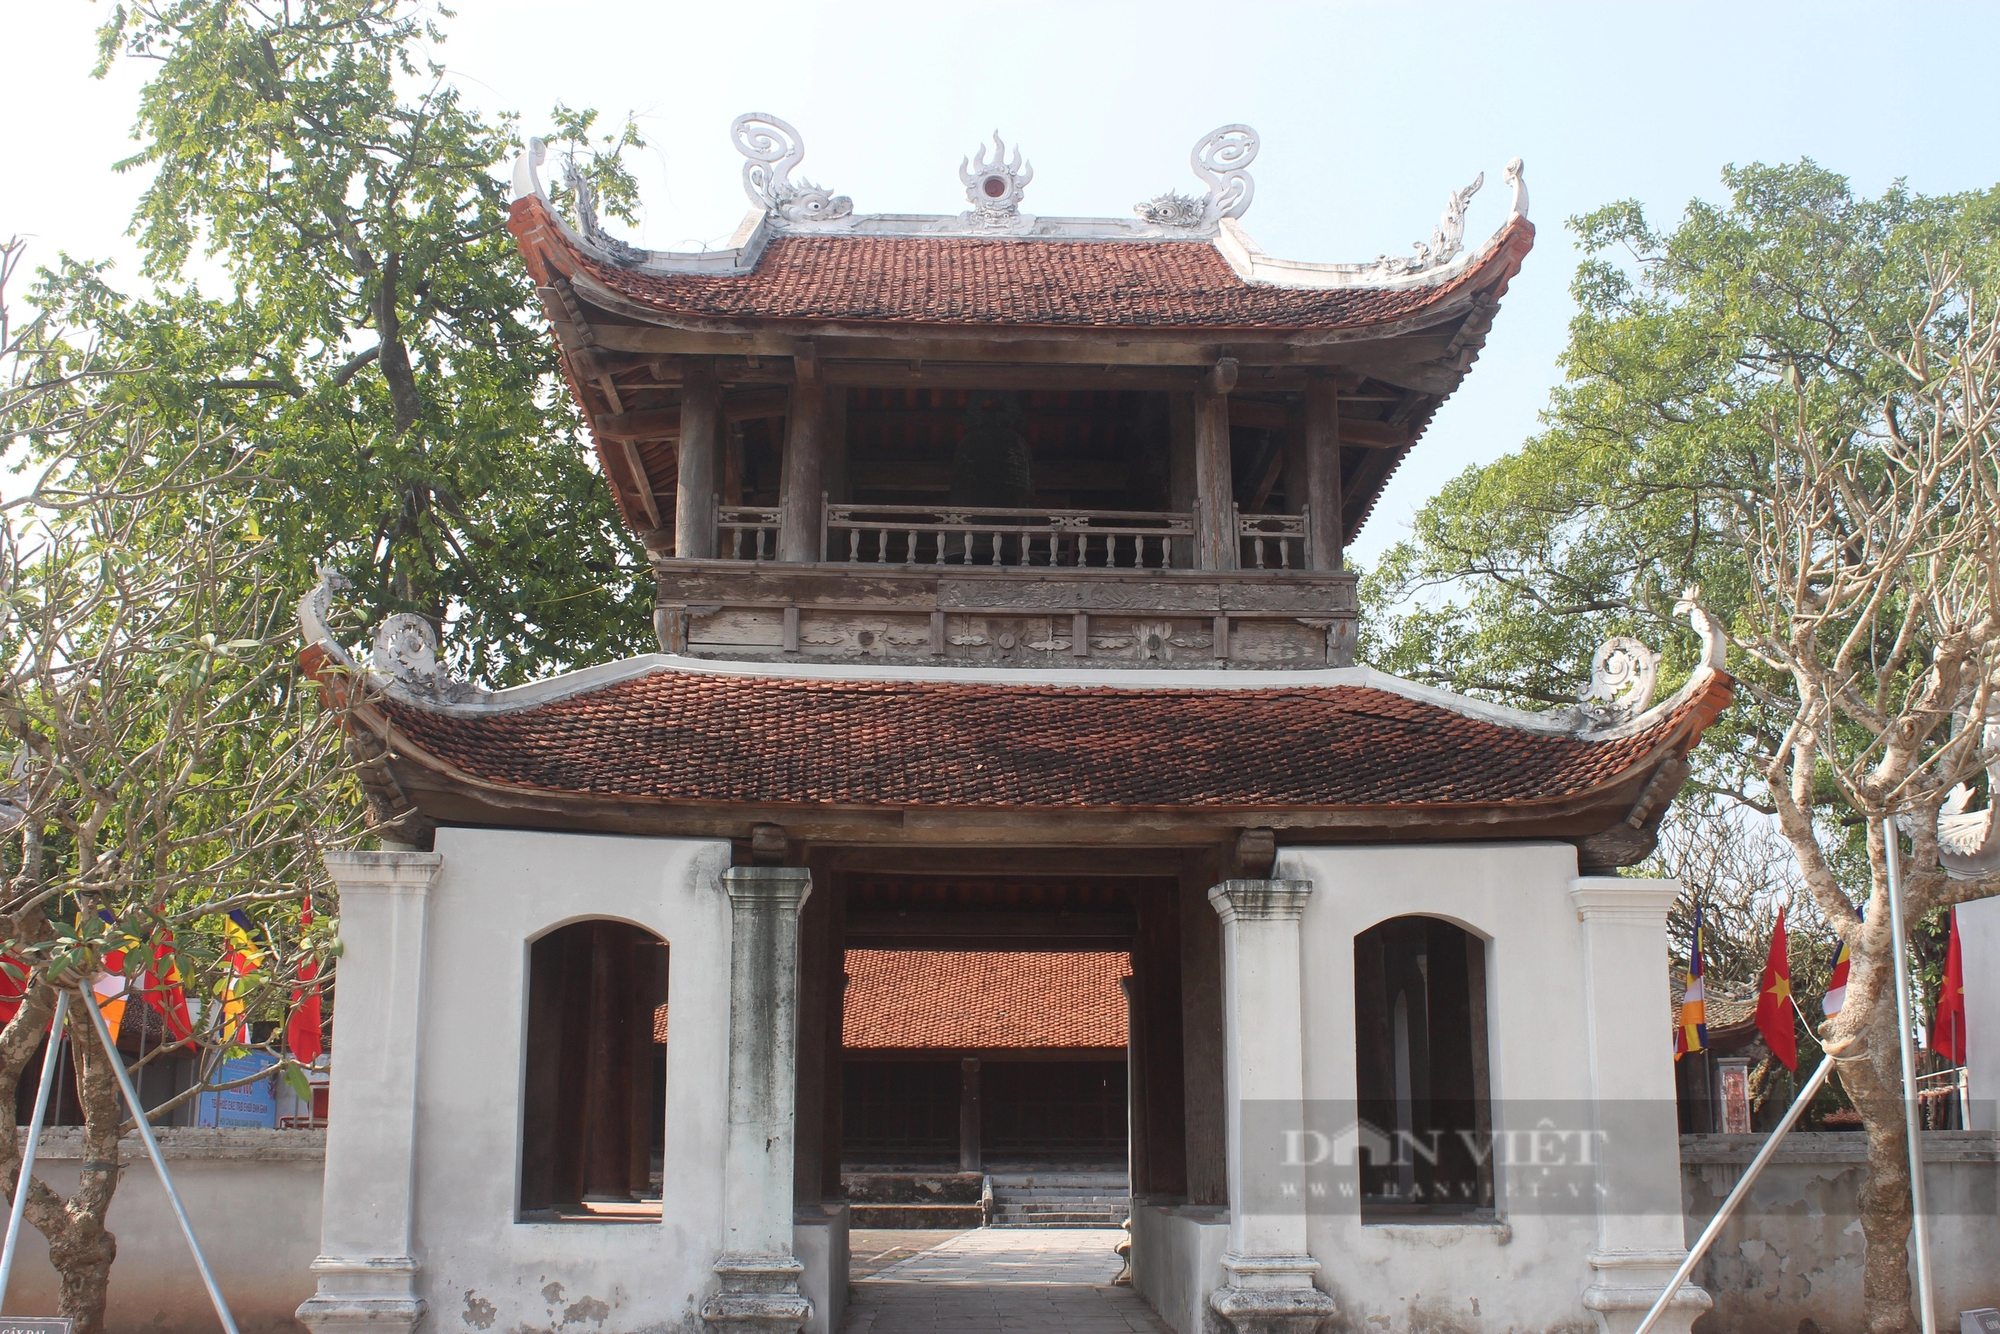 Tiết lộ về các cổ vật quý bên trong ngôi chùa ở ngoại thành Hà Nội - Ảnh 1.